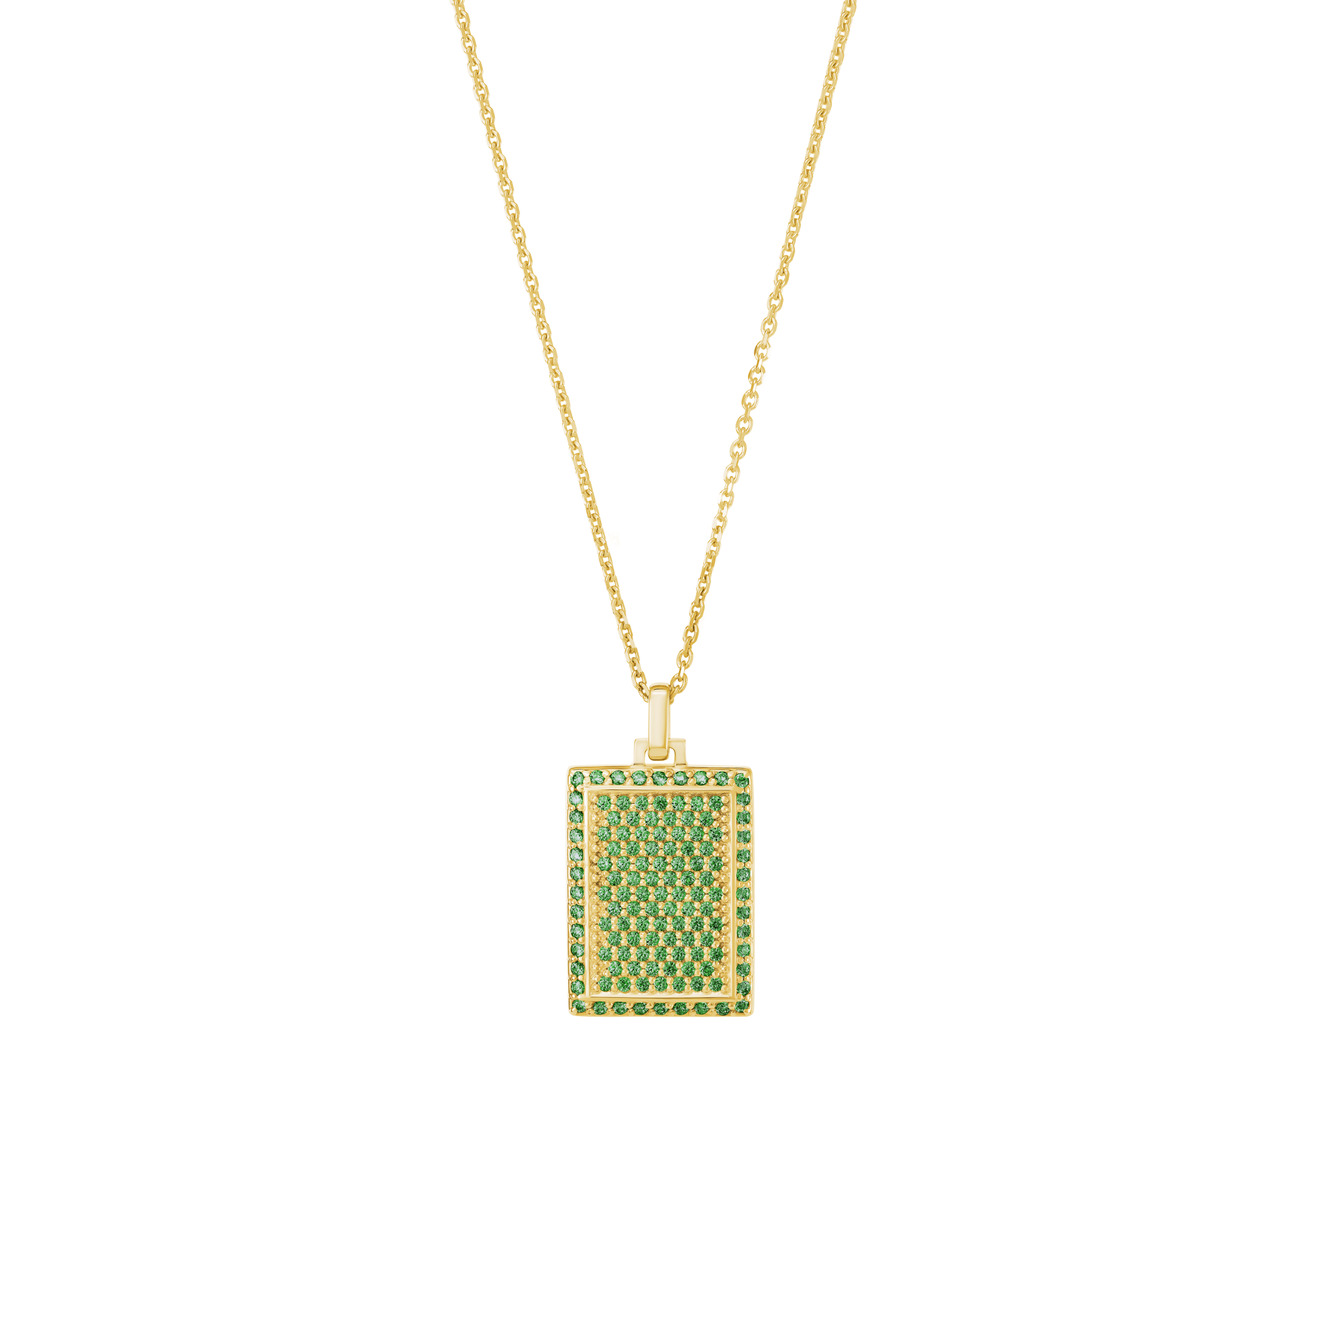 Jewlia Позолоченный прямоугольный медальон из серебра с зелеными кристаллами jewlia позолоченная печатка круг с зелеными кристаллами